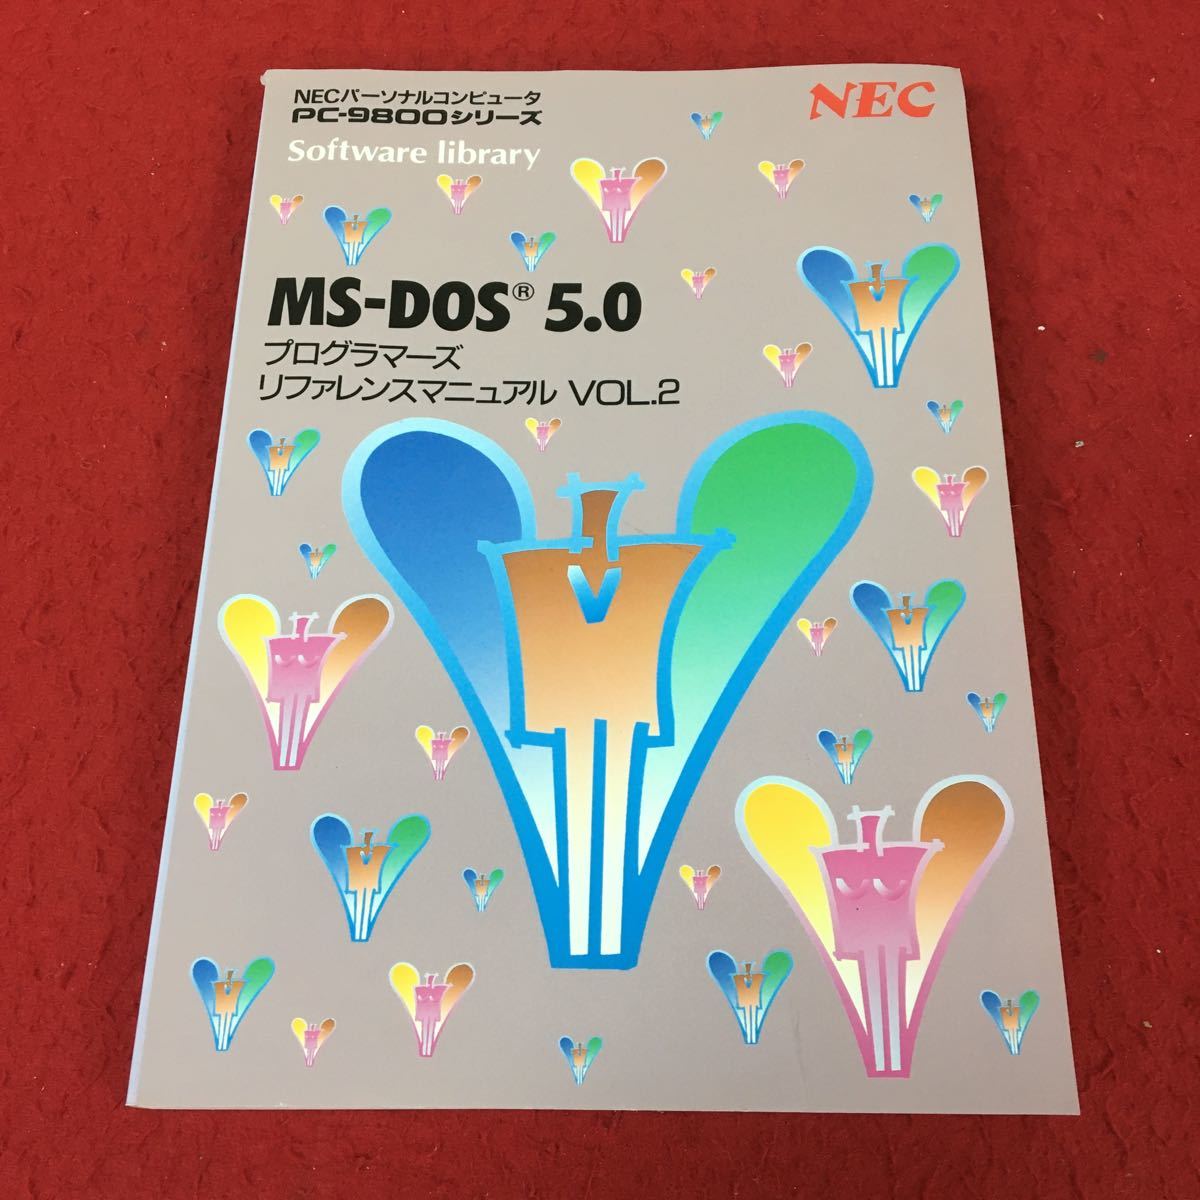 d-618 *13 MS-DOS 5.0 программист -z справочная информация manual VOL.2 NEC PC-9800 серии 1991 год примерно выпуск retro PC персональный компьютер 